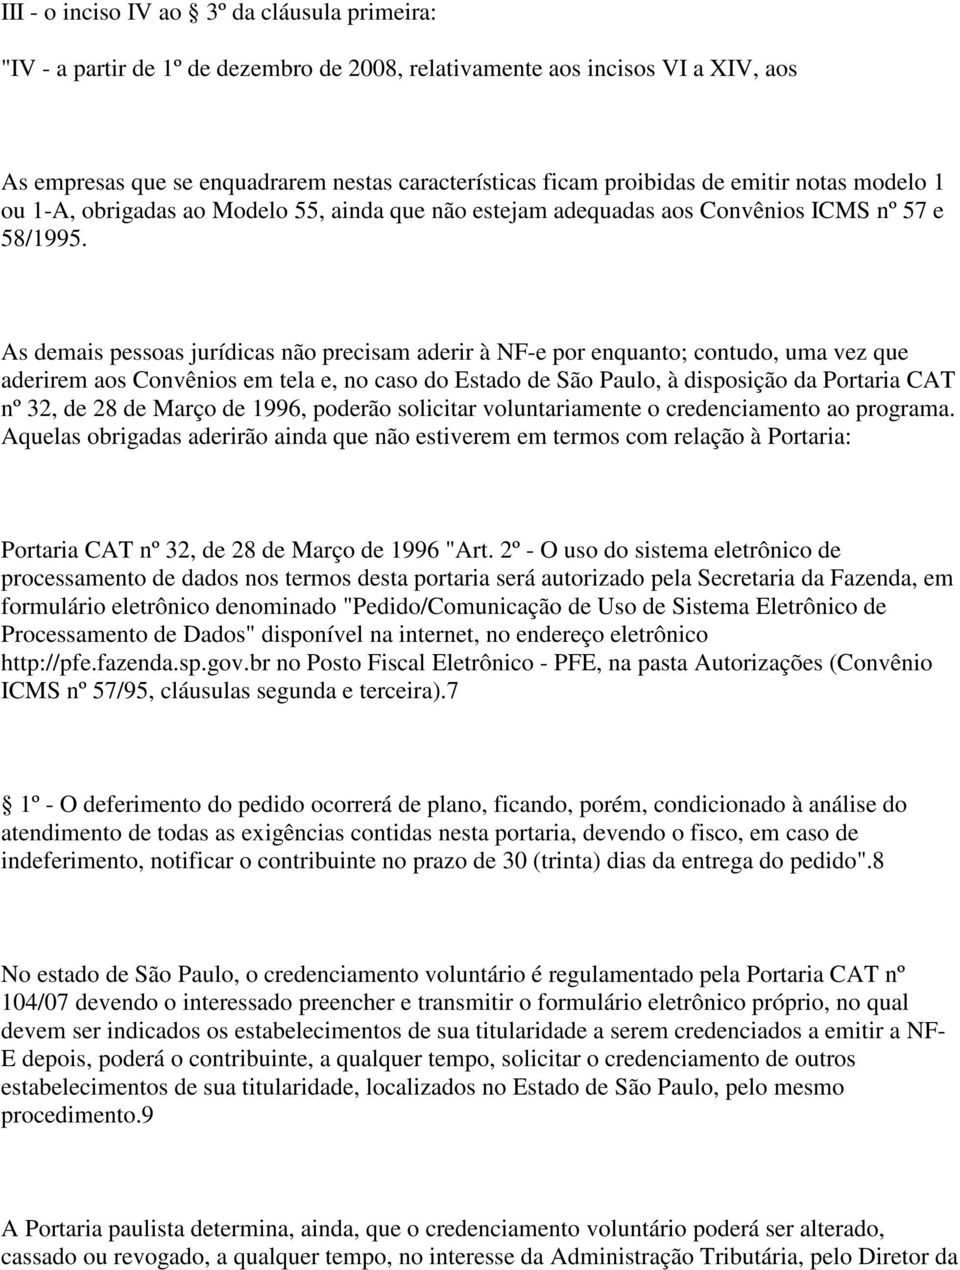 As demais pessoas jurídicas não precisam aderir à NF-e por enquanto; contudo, uma vez que aderirem aos Convênios em tela e, no caso do Estado de São Paulo, à disposição da Portaria CAT nº 32, de 28